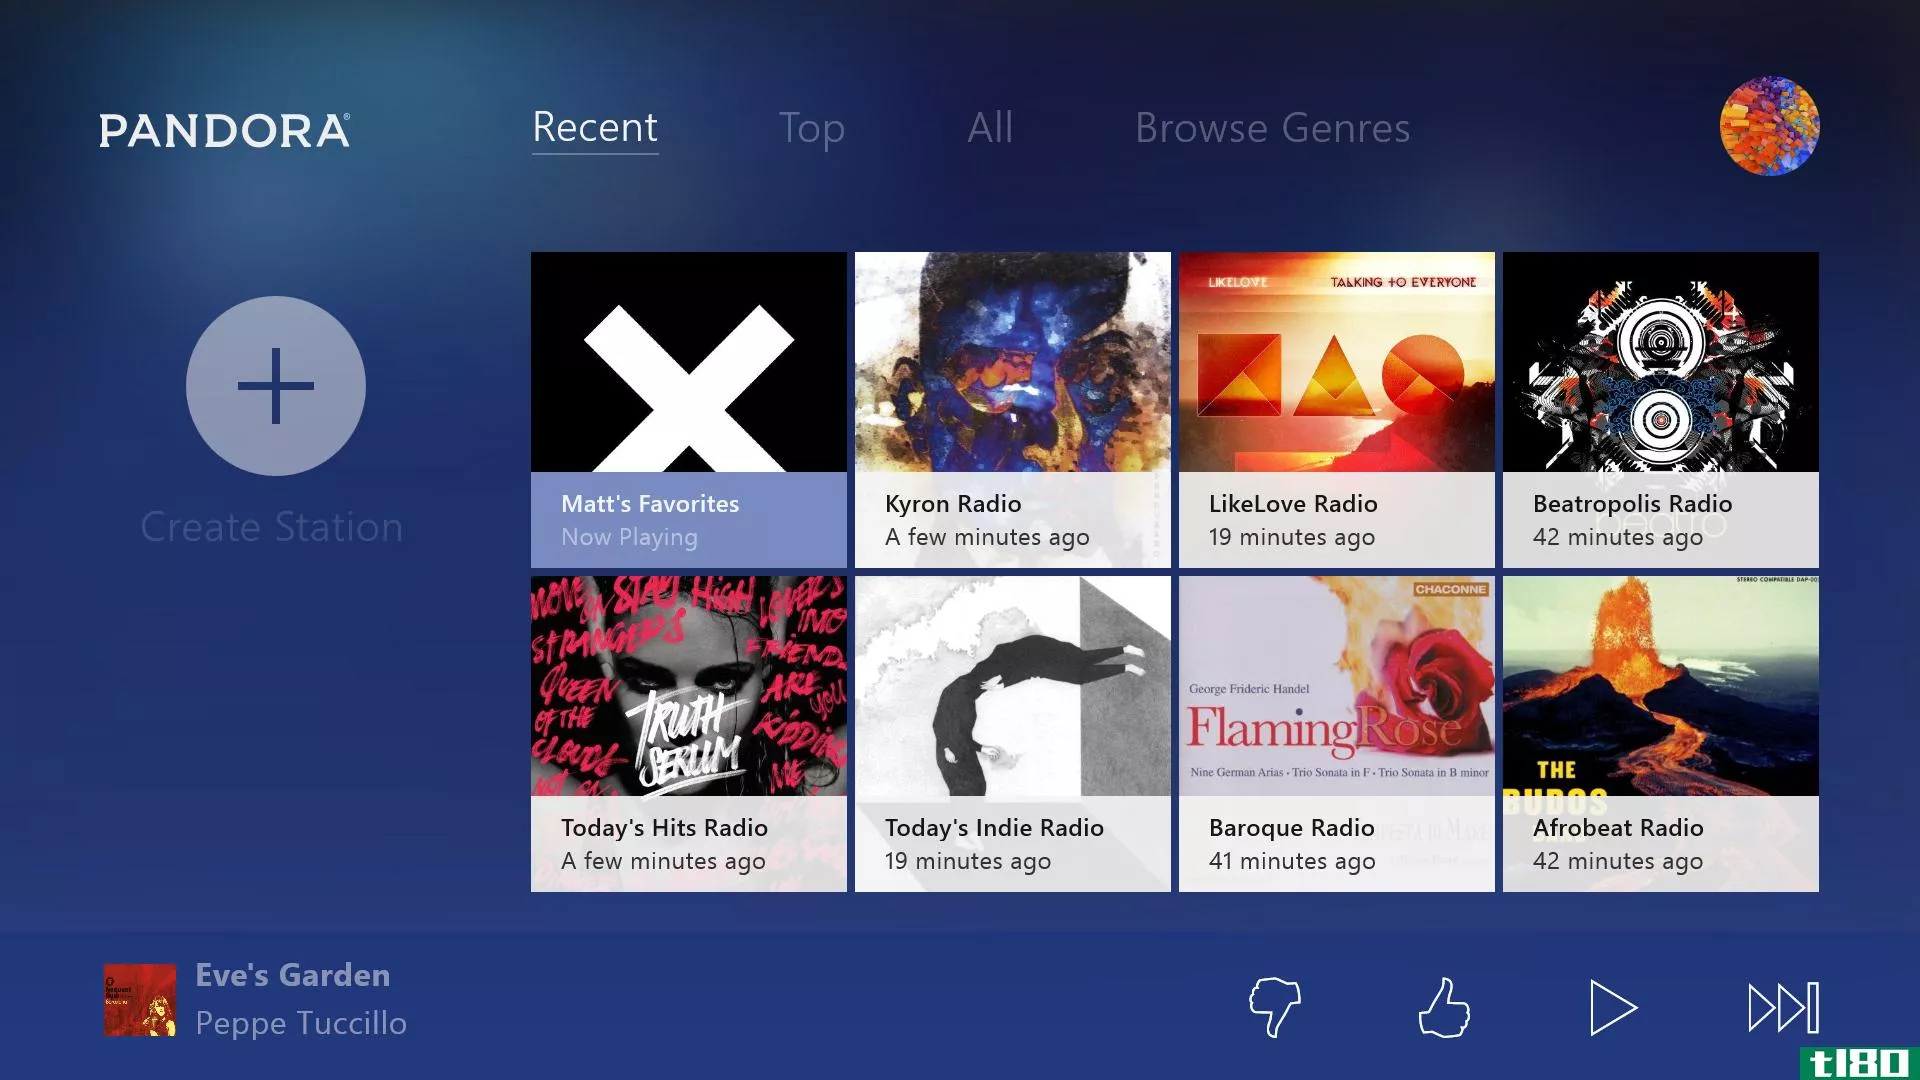 潘多拉的新xbox one应用程序让你在玩游戏的同时收听电台